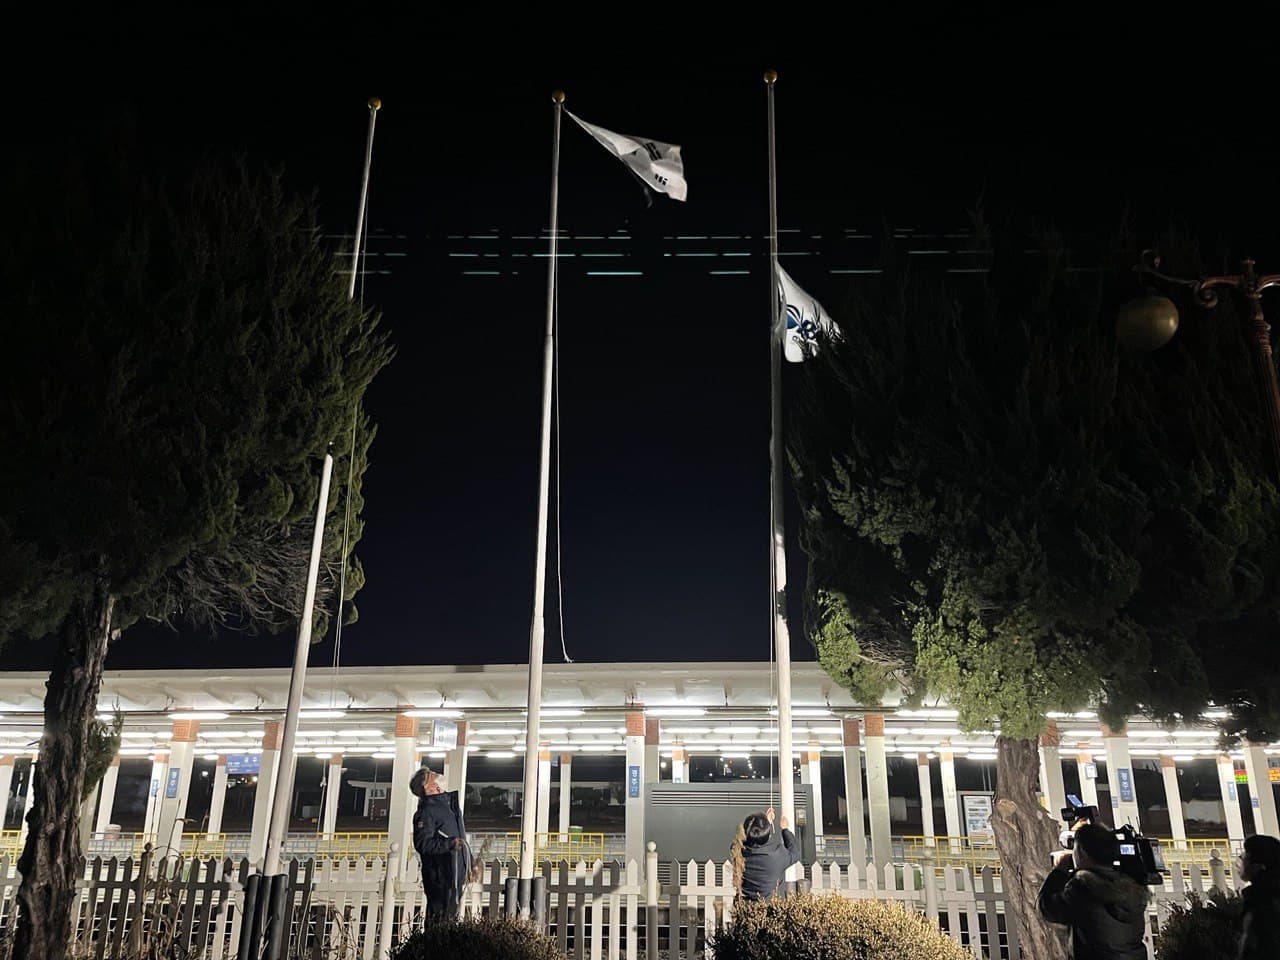 28일 0시를 앞두고 무재해를 염원하는 깃발과 한국철도공사, 태극기 순서로 하강식이 진행되고 있다.